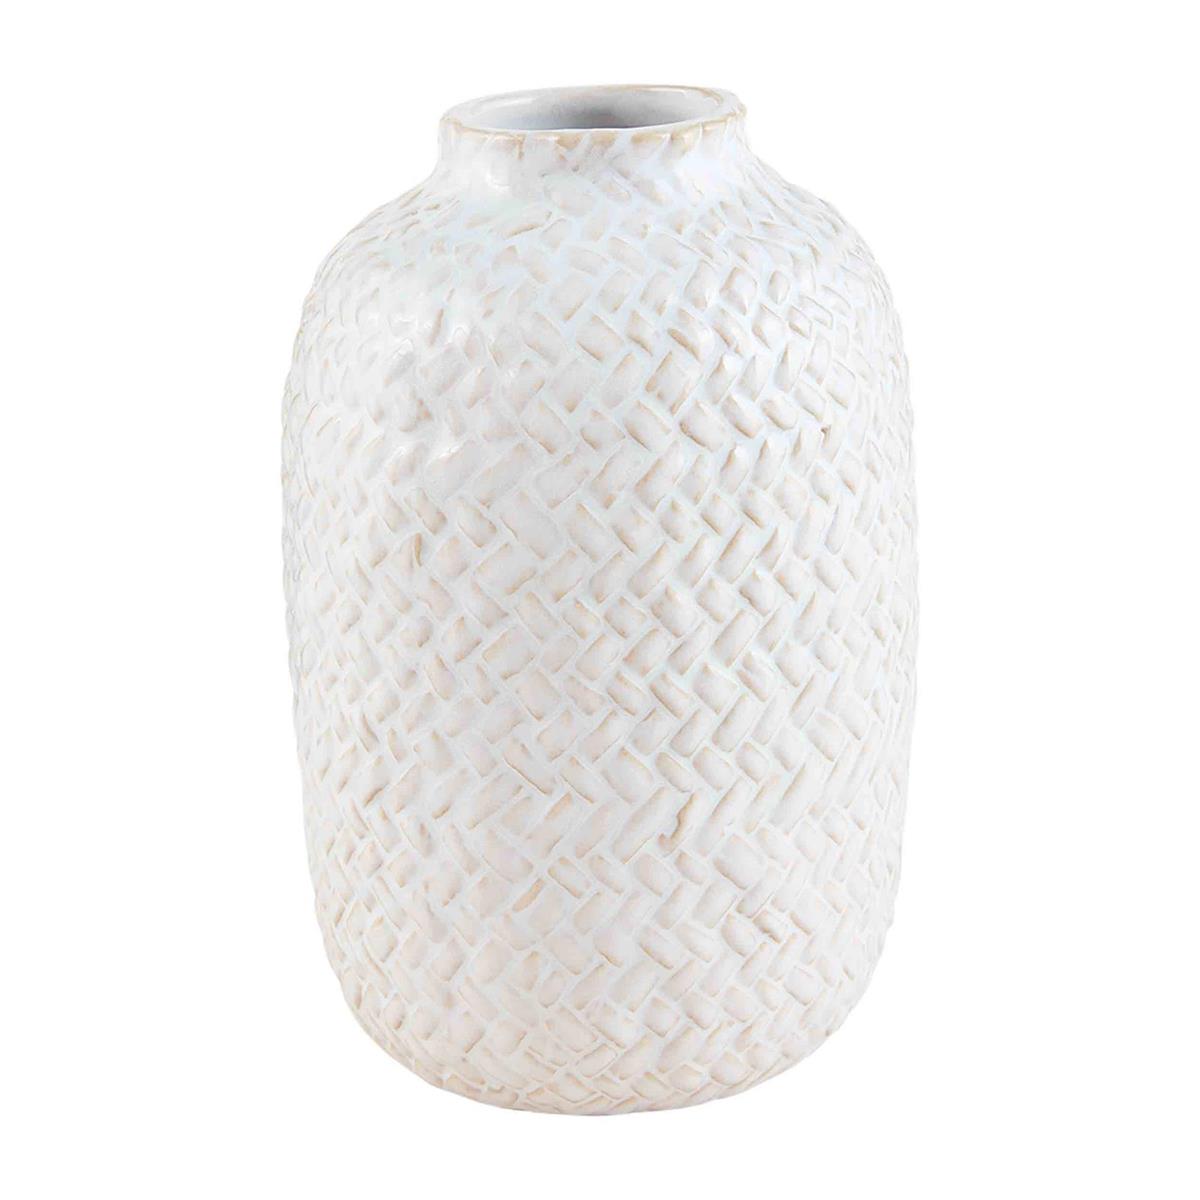 Textured Bud Vases